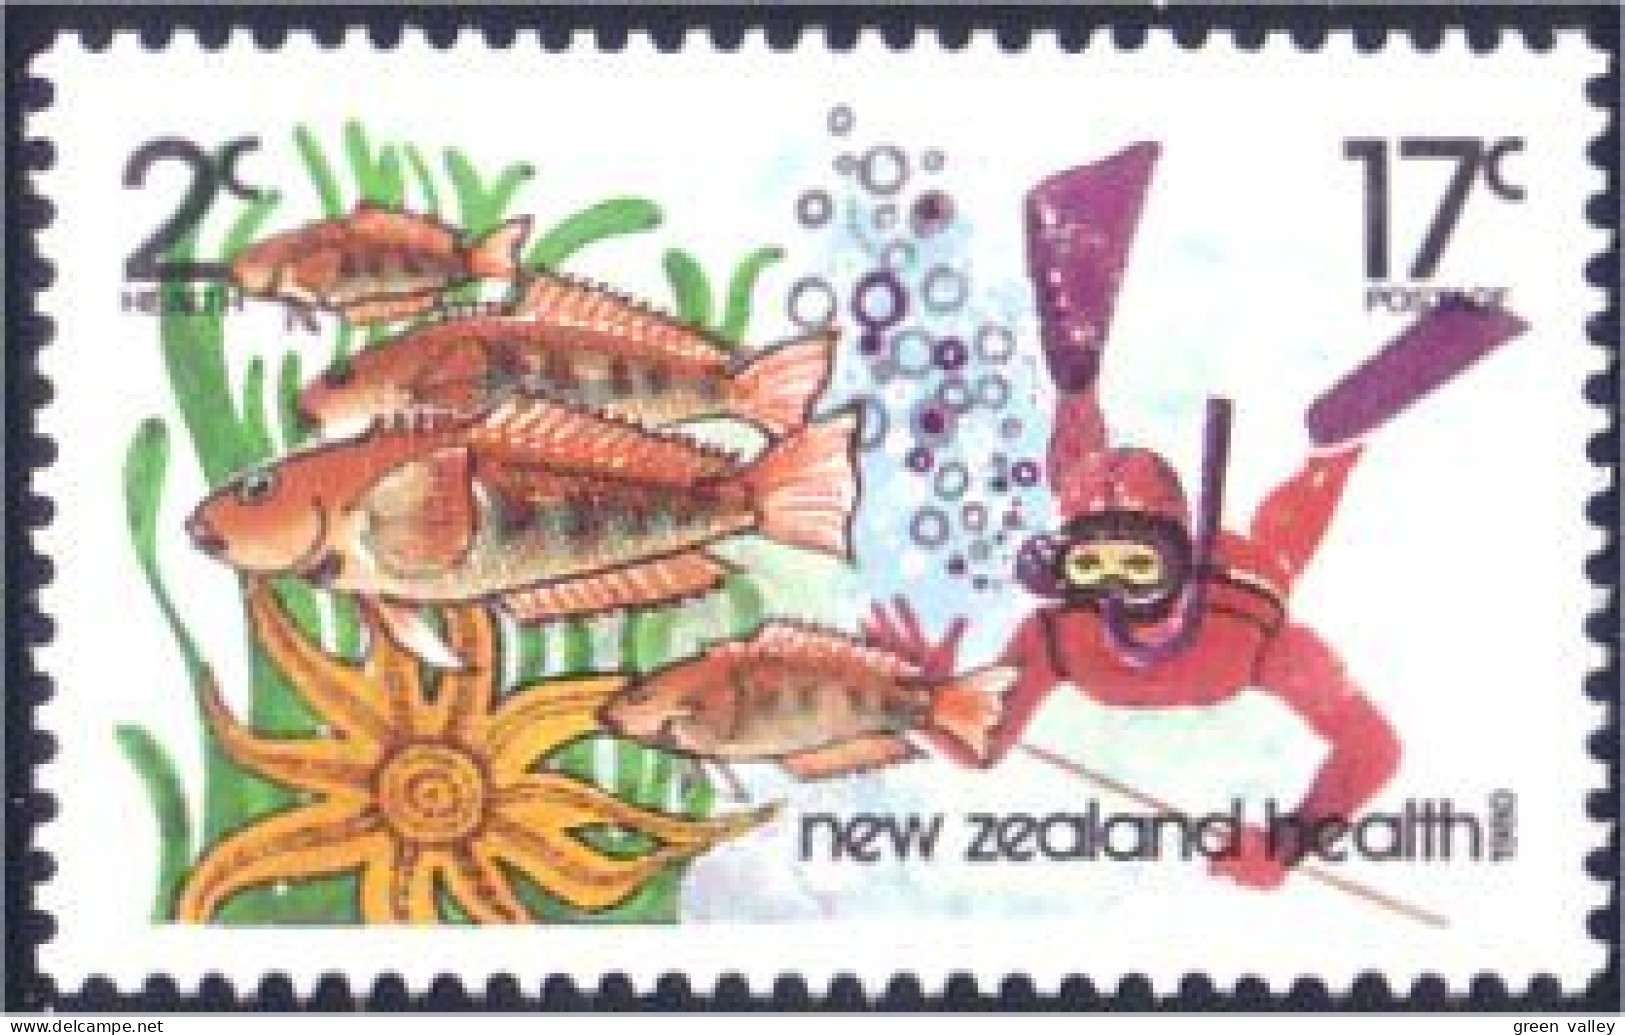 706 New Zealand Plongee Diving Diver Plongeur MNH ** Neuf SC (NZ-13a) - Plongée